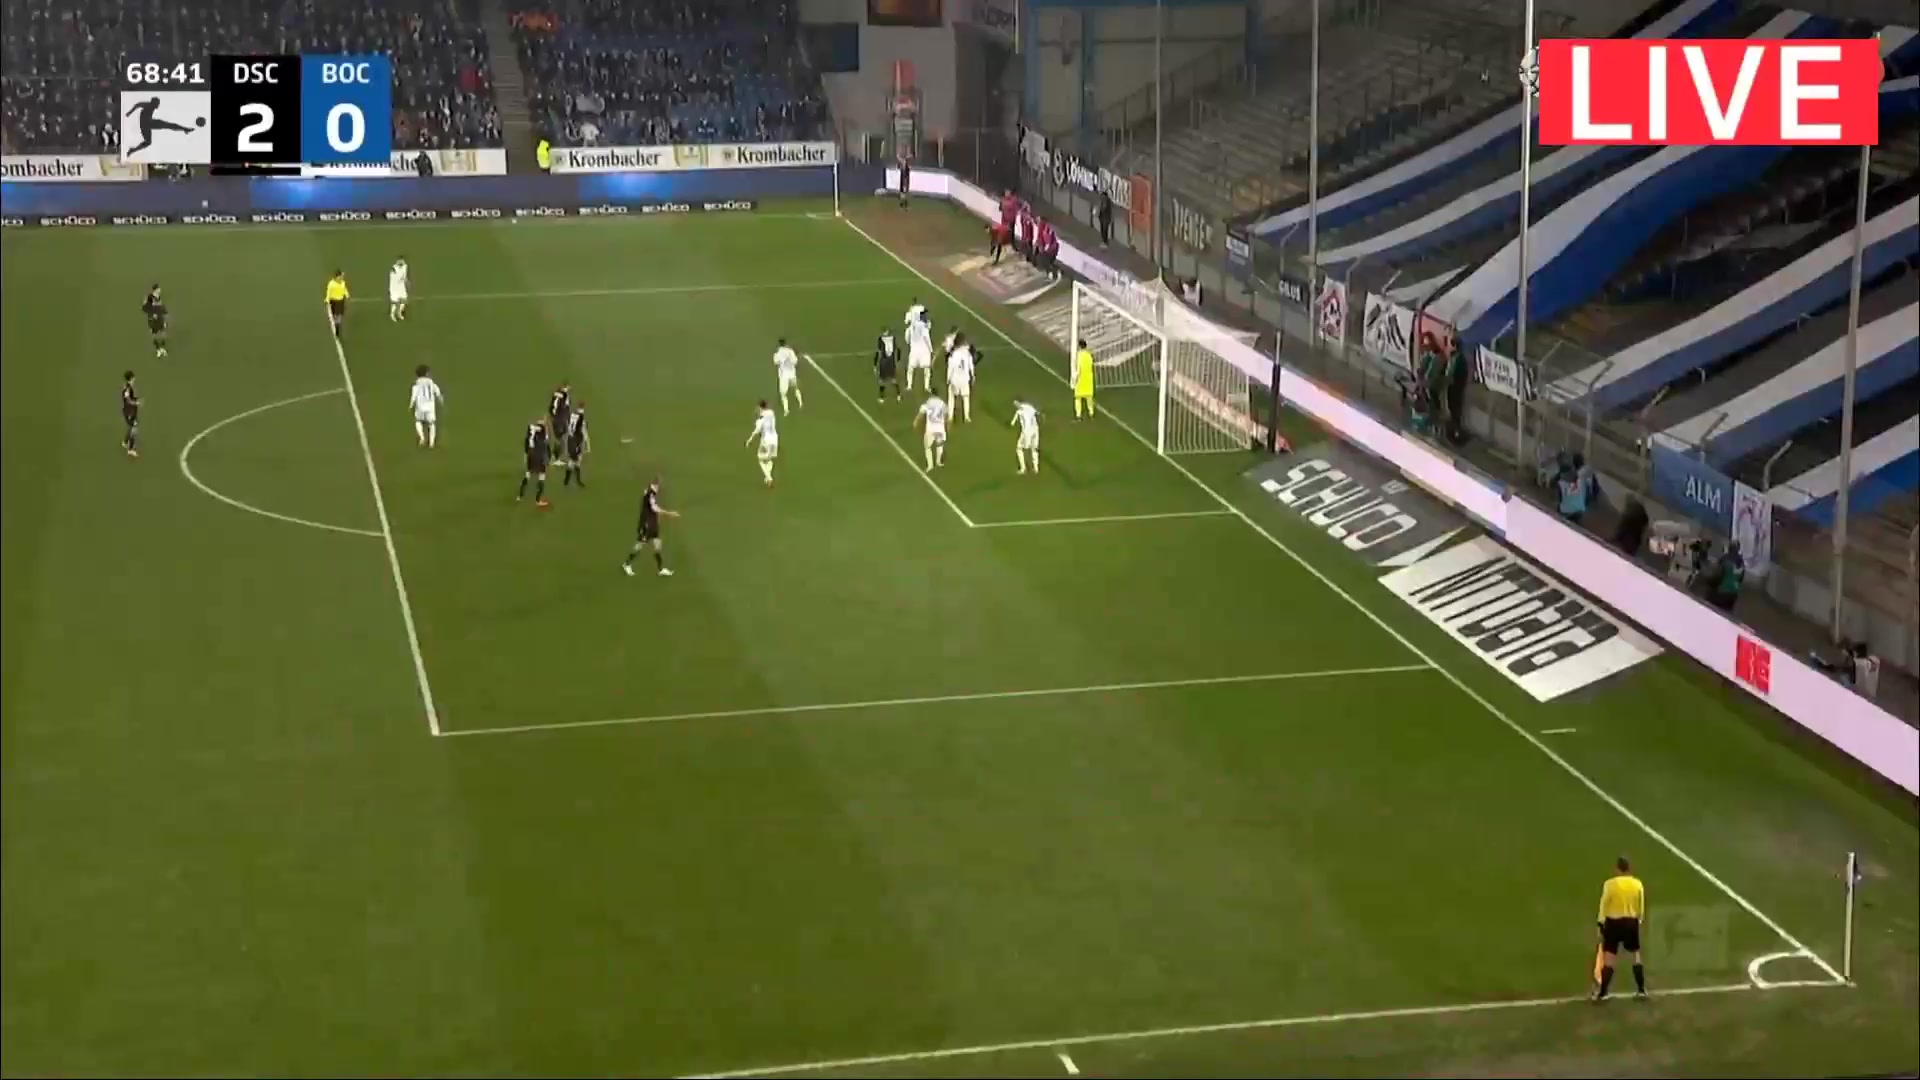 Bundesliga Arminia Bielefeld Vs VfL Bochum Patrick Wimmer Goal in 68 min, Score 2:0